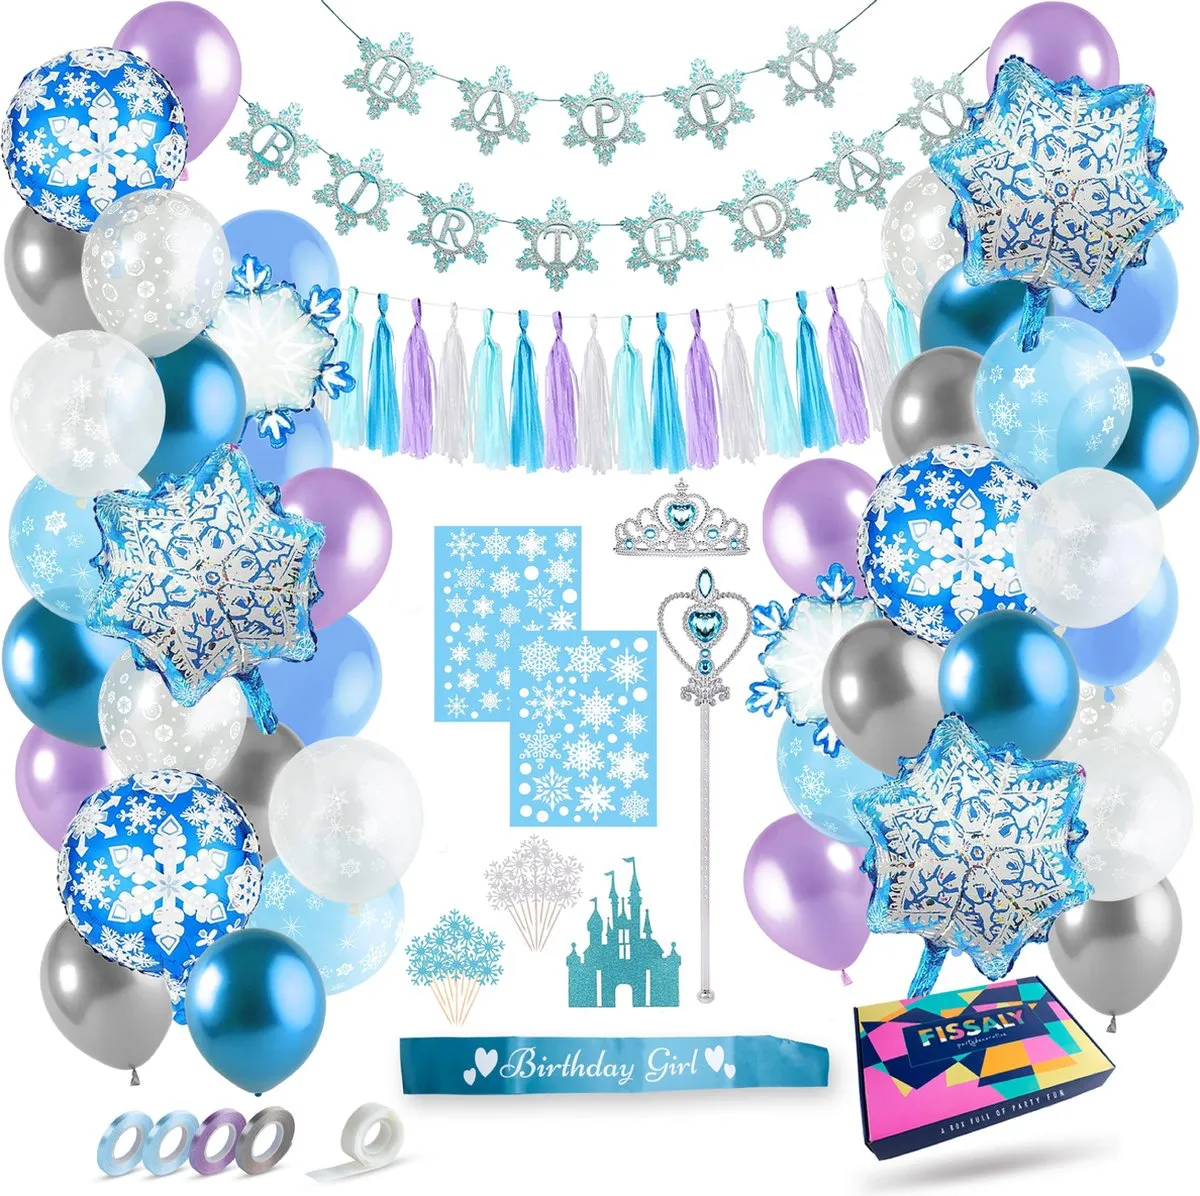 Fissaly® 96 Stuks Frozen Thema Verjaardag Decoratie Versiering – Feestpakket met ballonnen, taart decoratie, slingers, vlaggenlijn - Kinderfeestje Meisje - Elsa, Anna, Olaf speelgoed